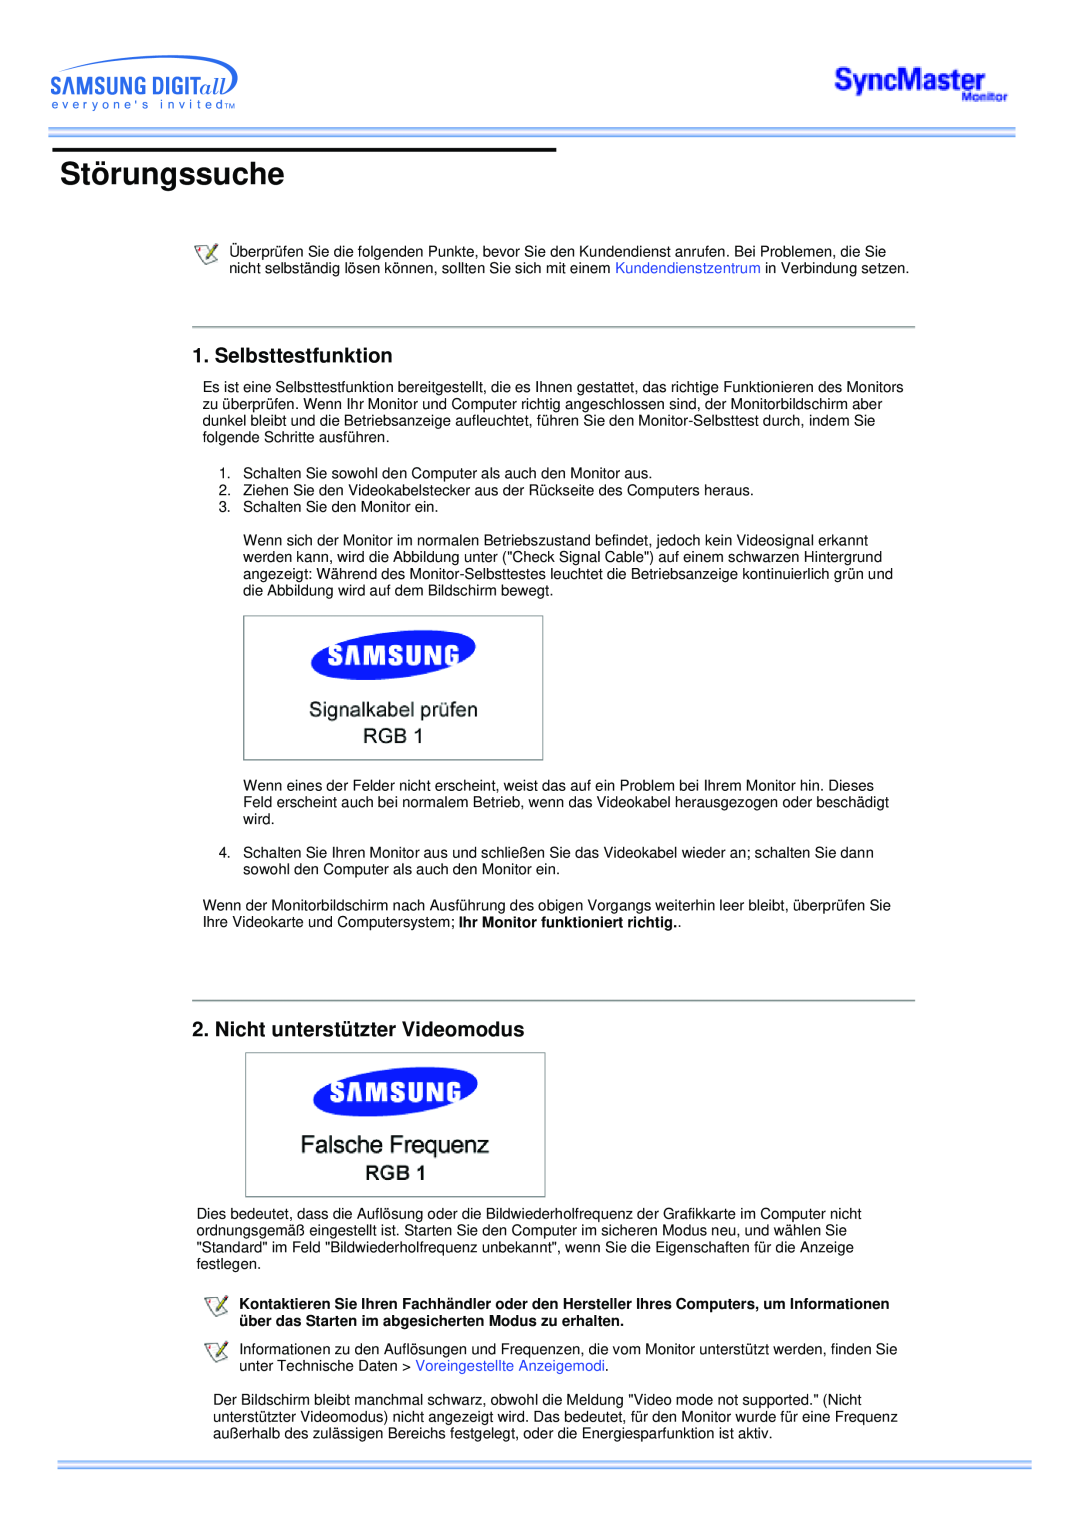 Samsung CK40PSNS/EDC, CK40PSNSG/EDC, CK40PSNB/EDC manual Störungssuche, Selbsttestfunktion, Nicht unterstützter Videomodus 